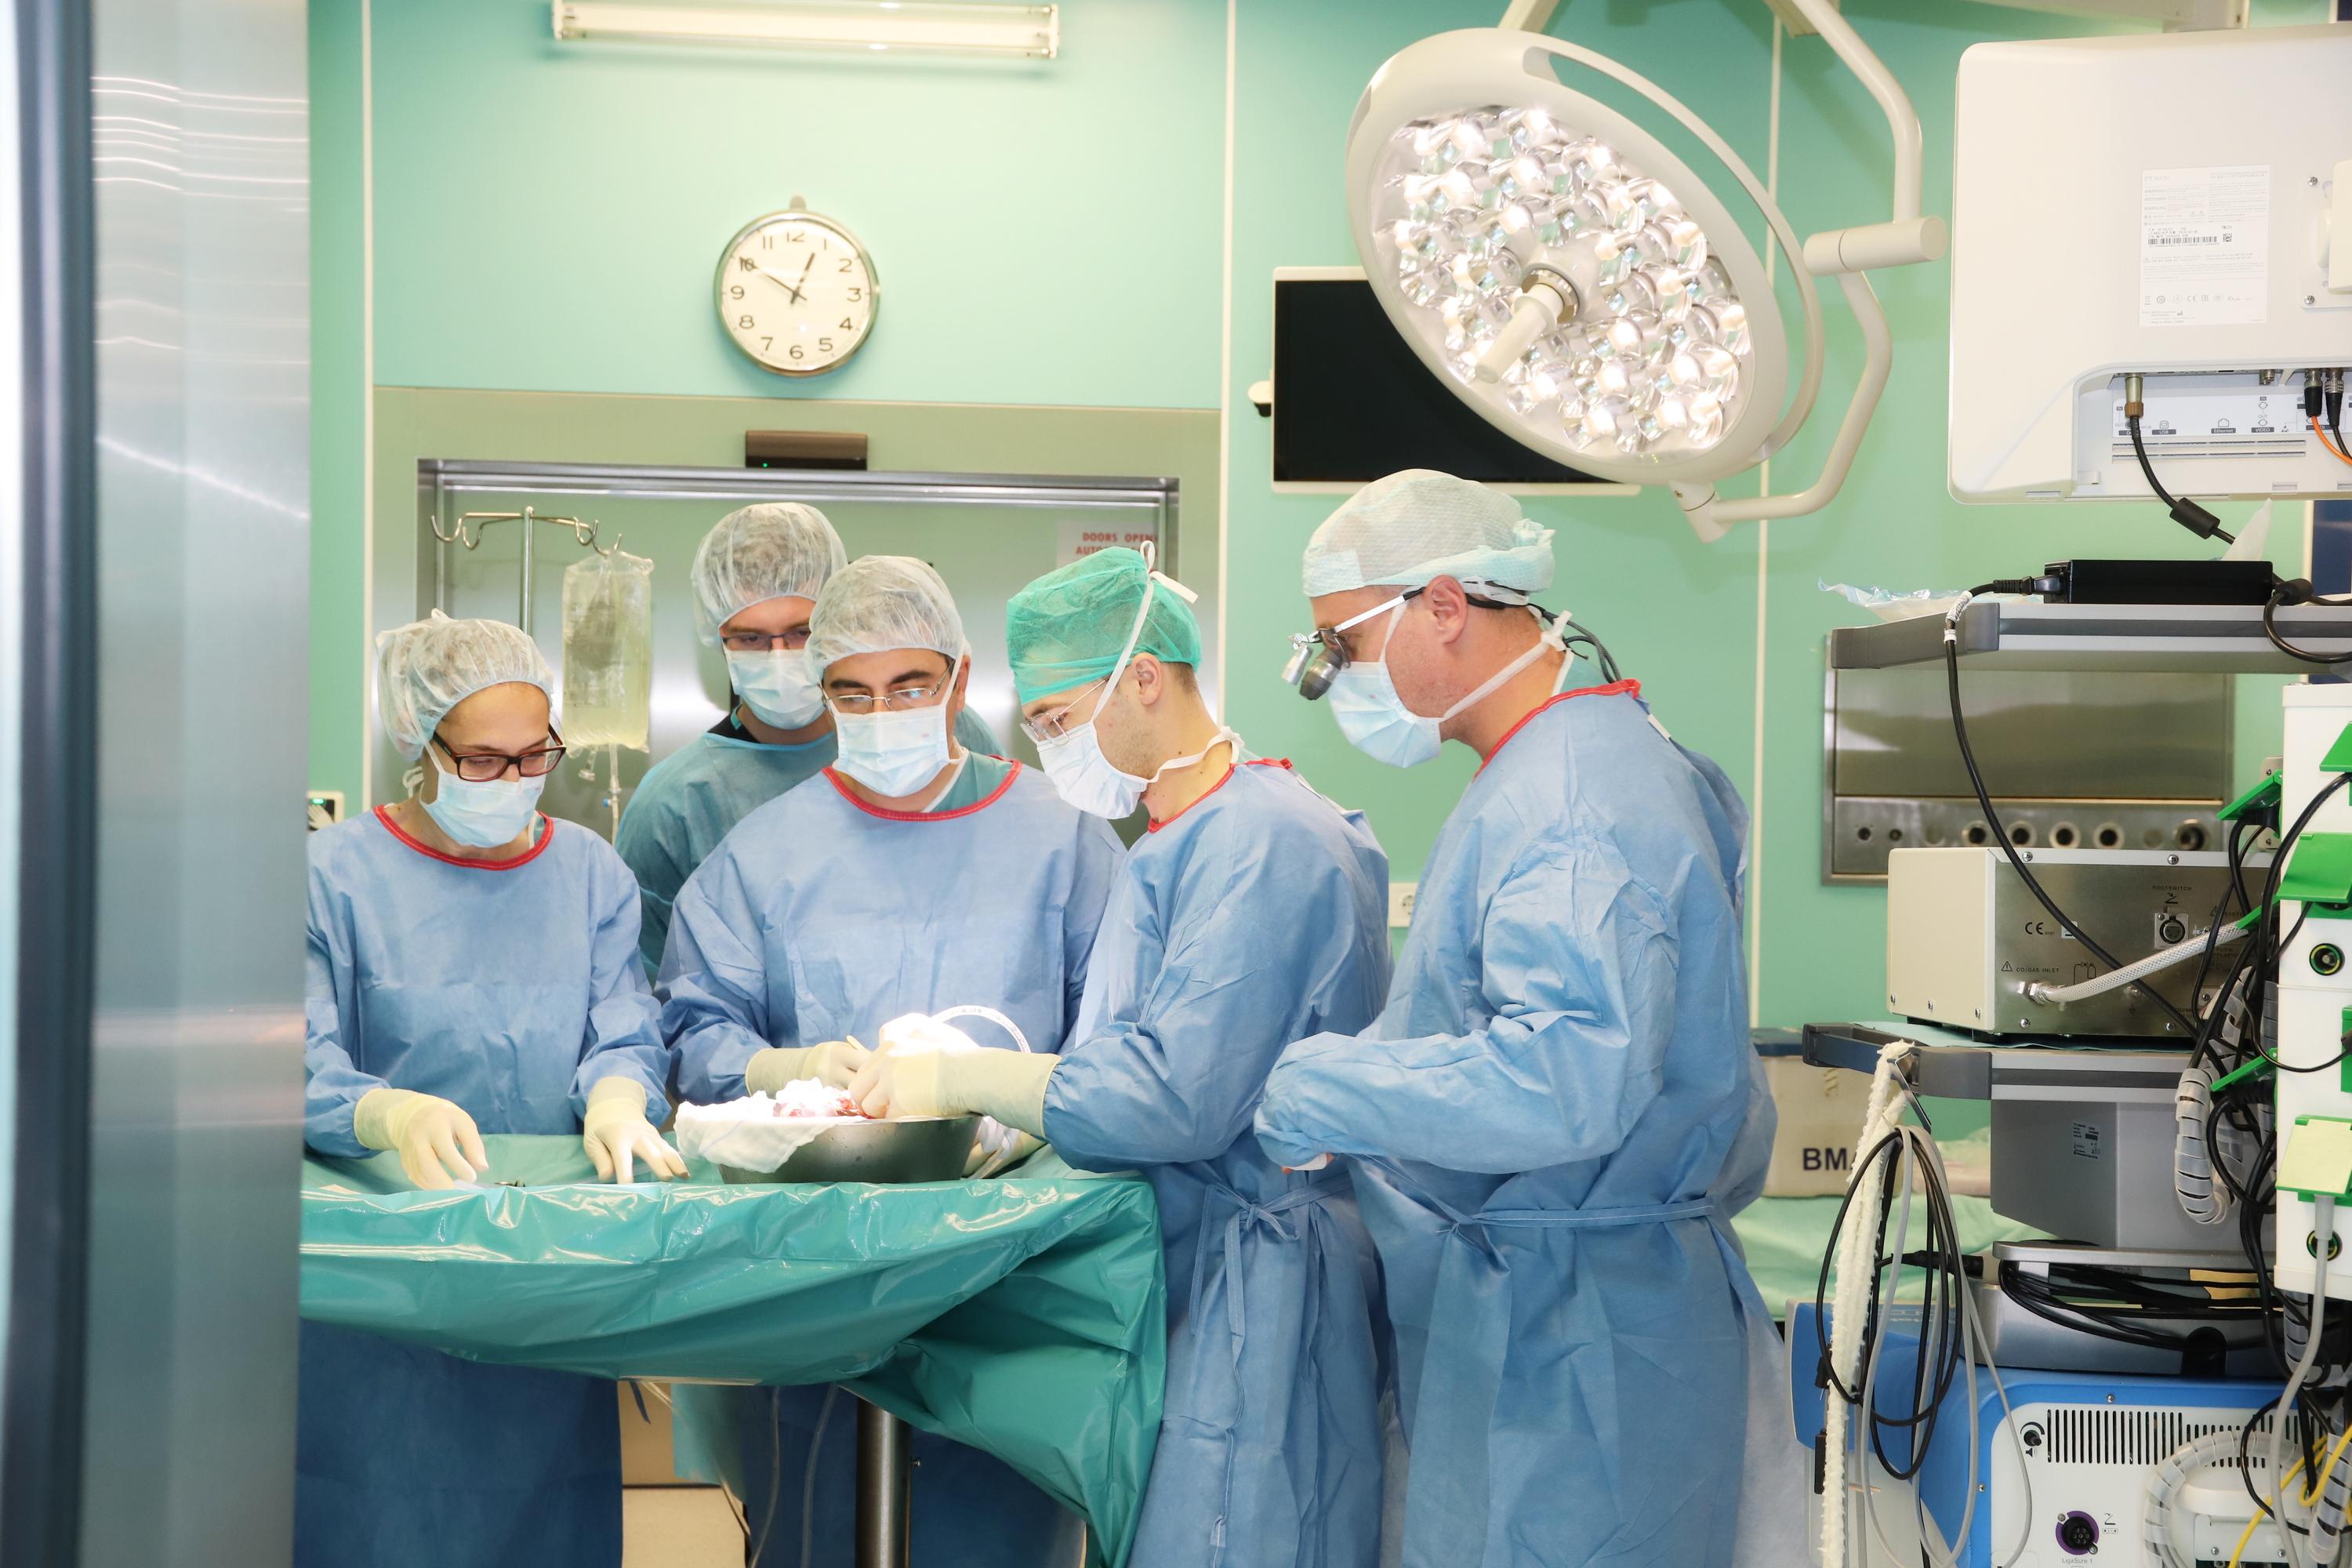 Трансплантация във ВМА София: 18-годишно момче дава живот на 56-годишна жен